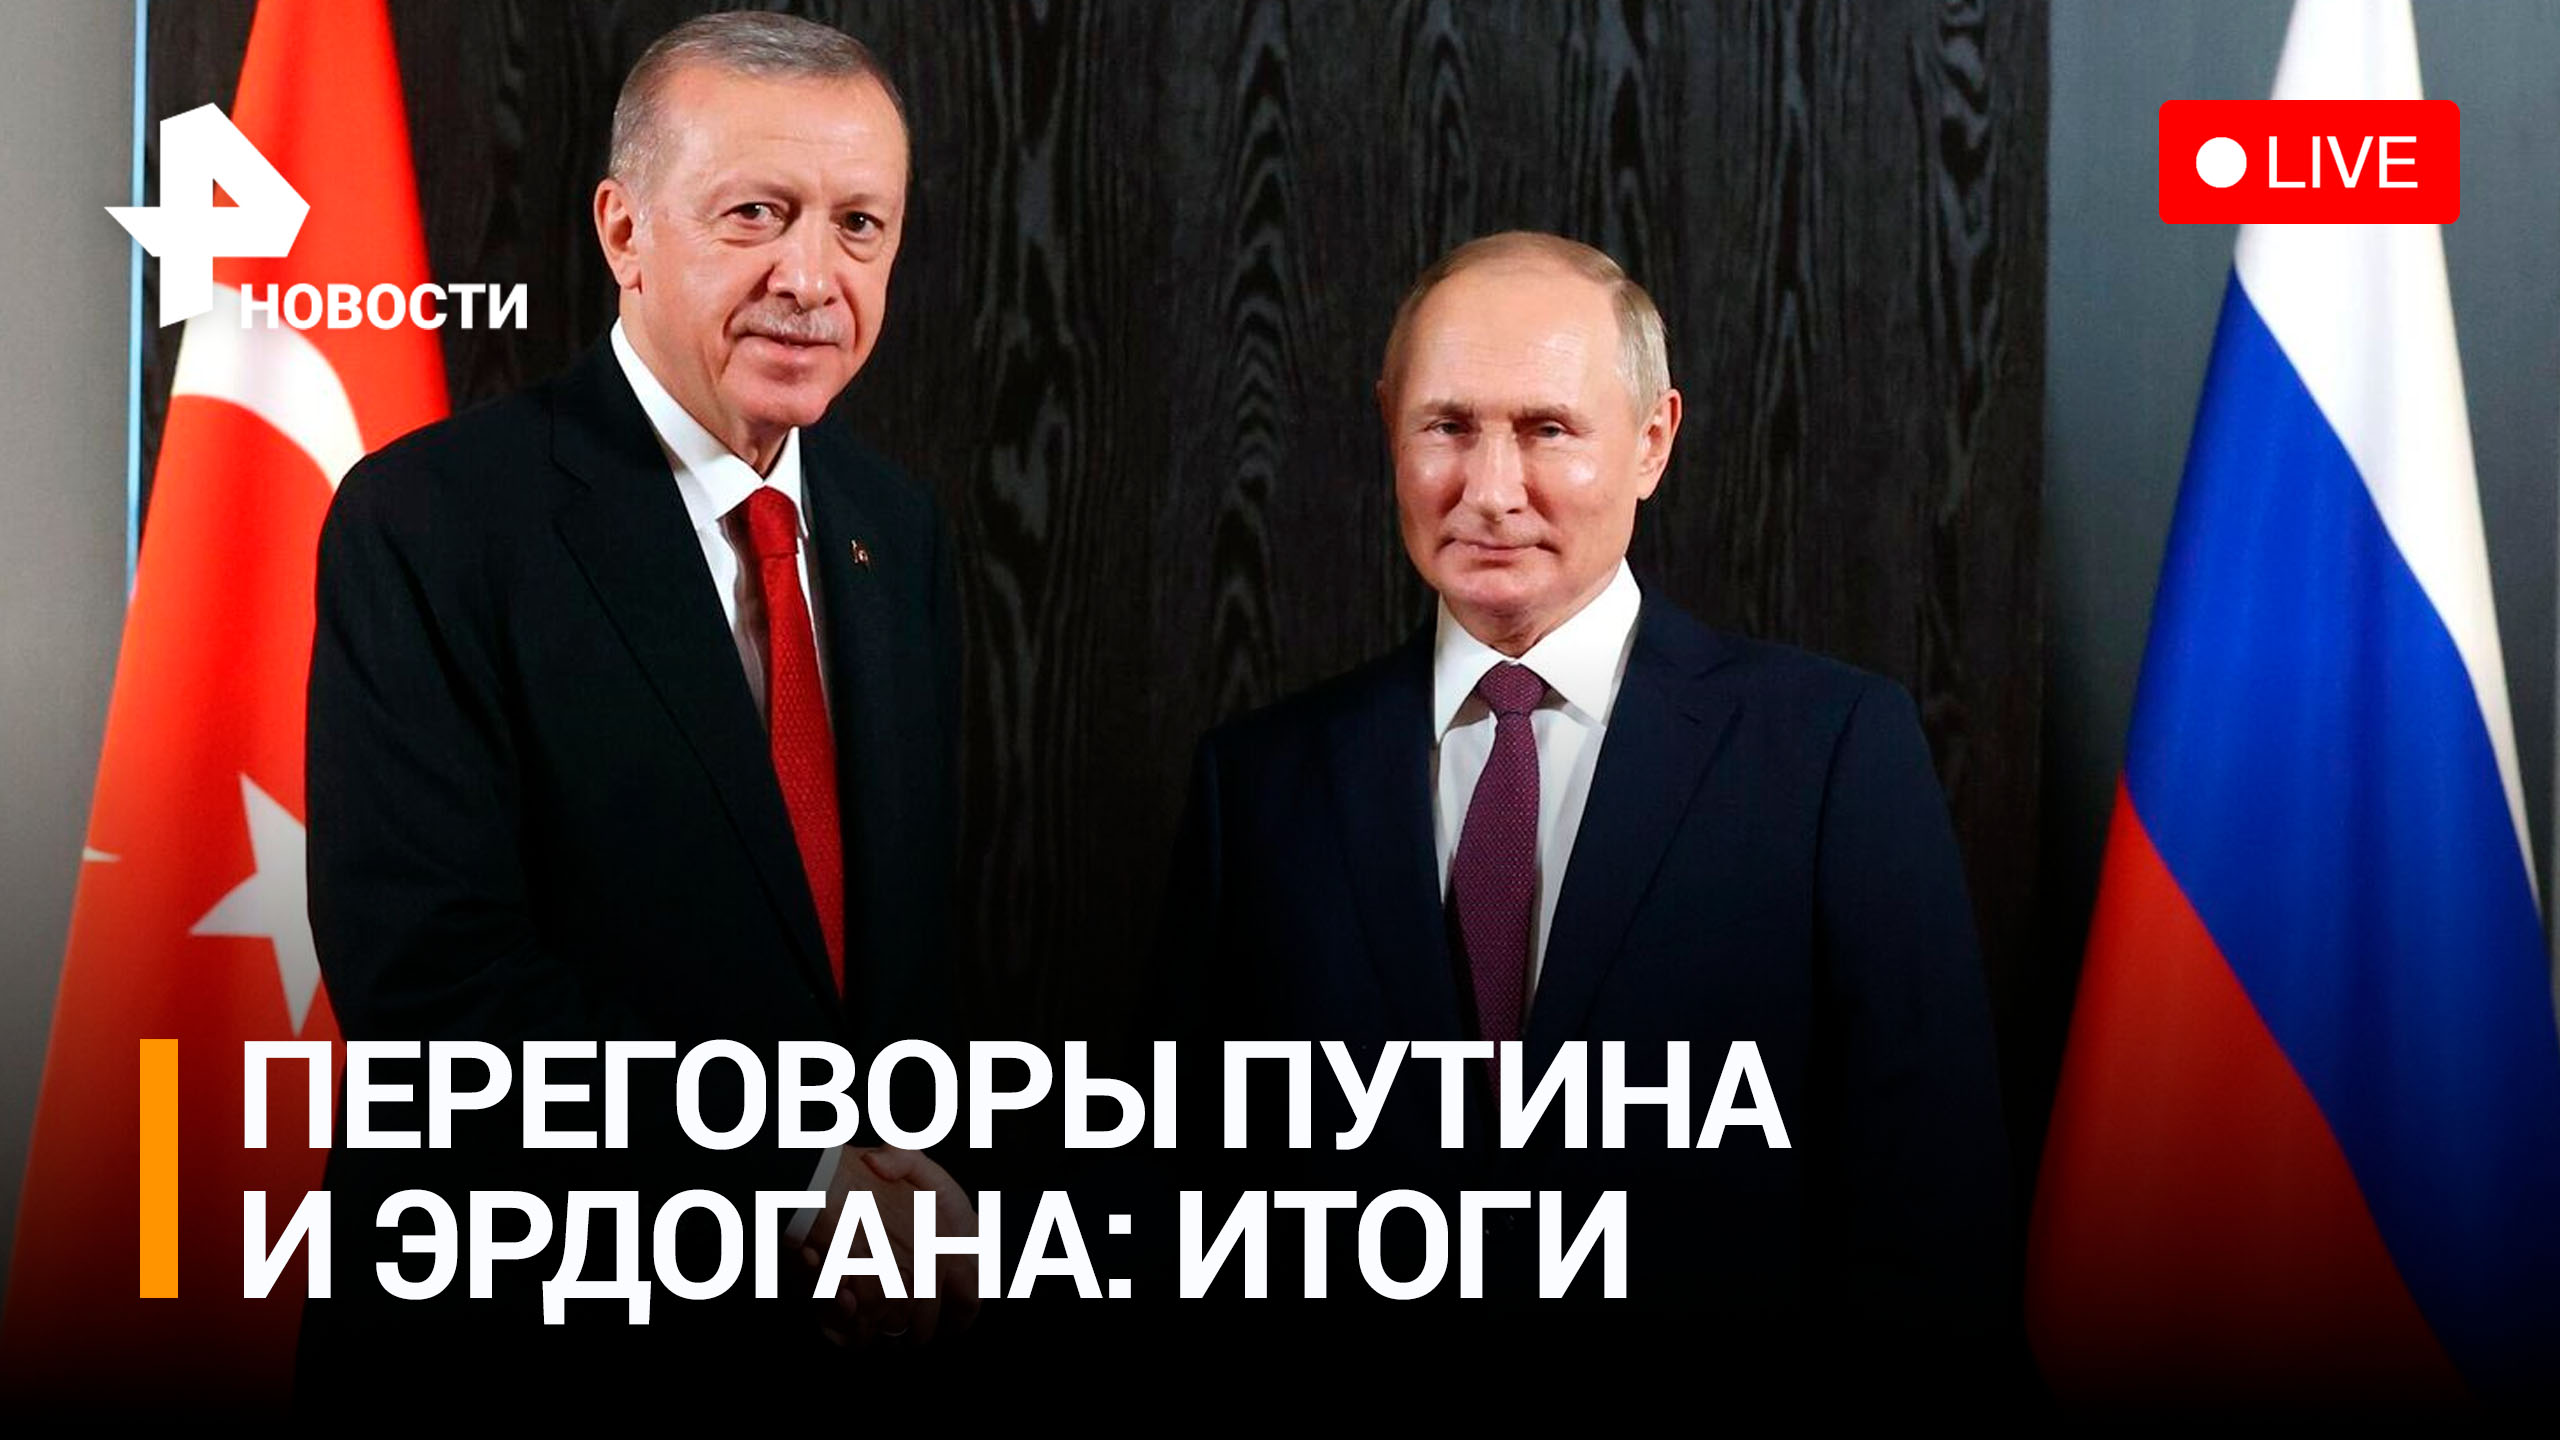 Итоги переговоров Путина и Эрдогана. Прямая трансляция